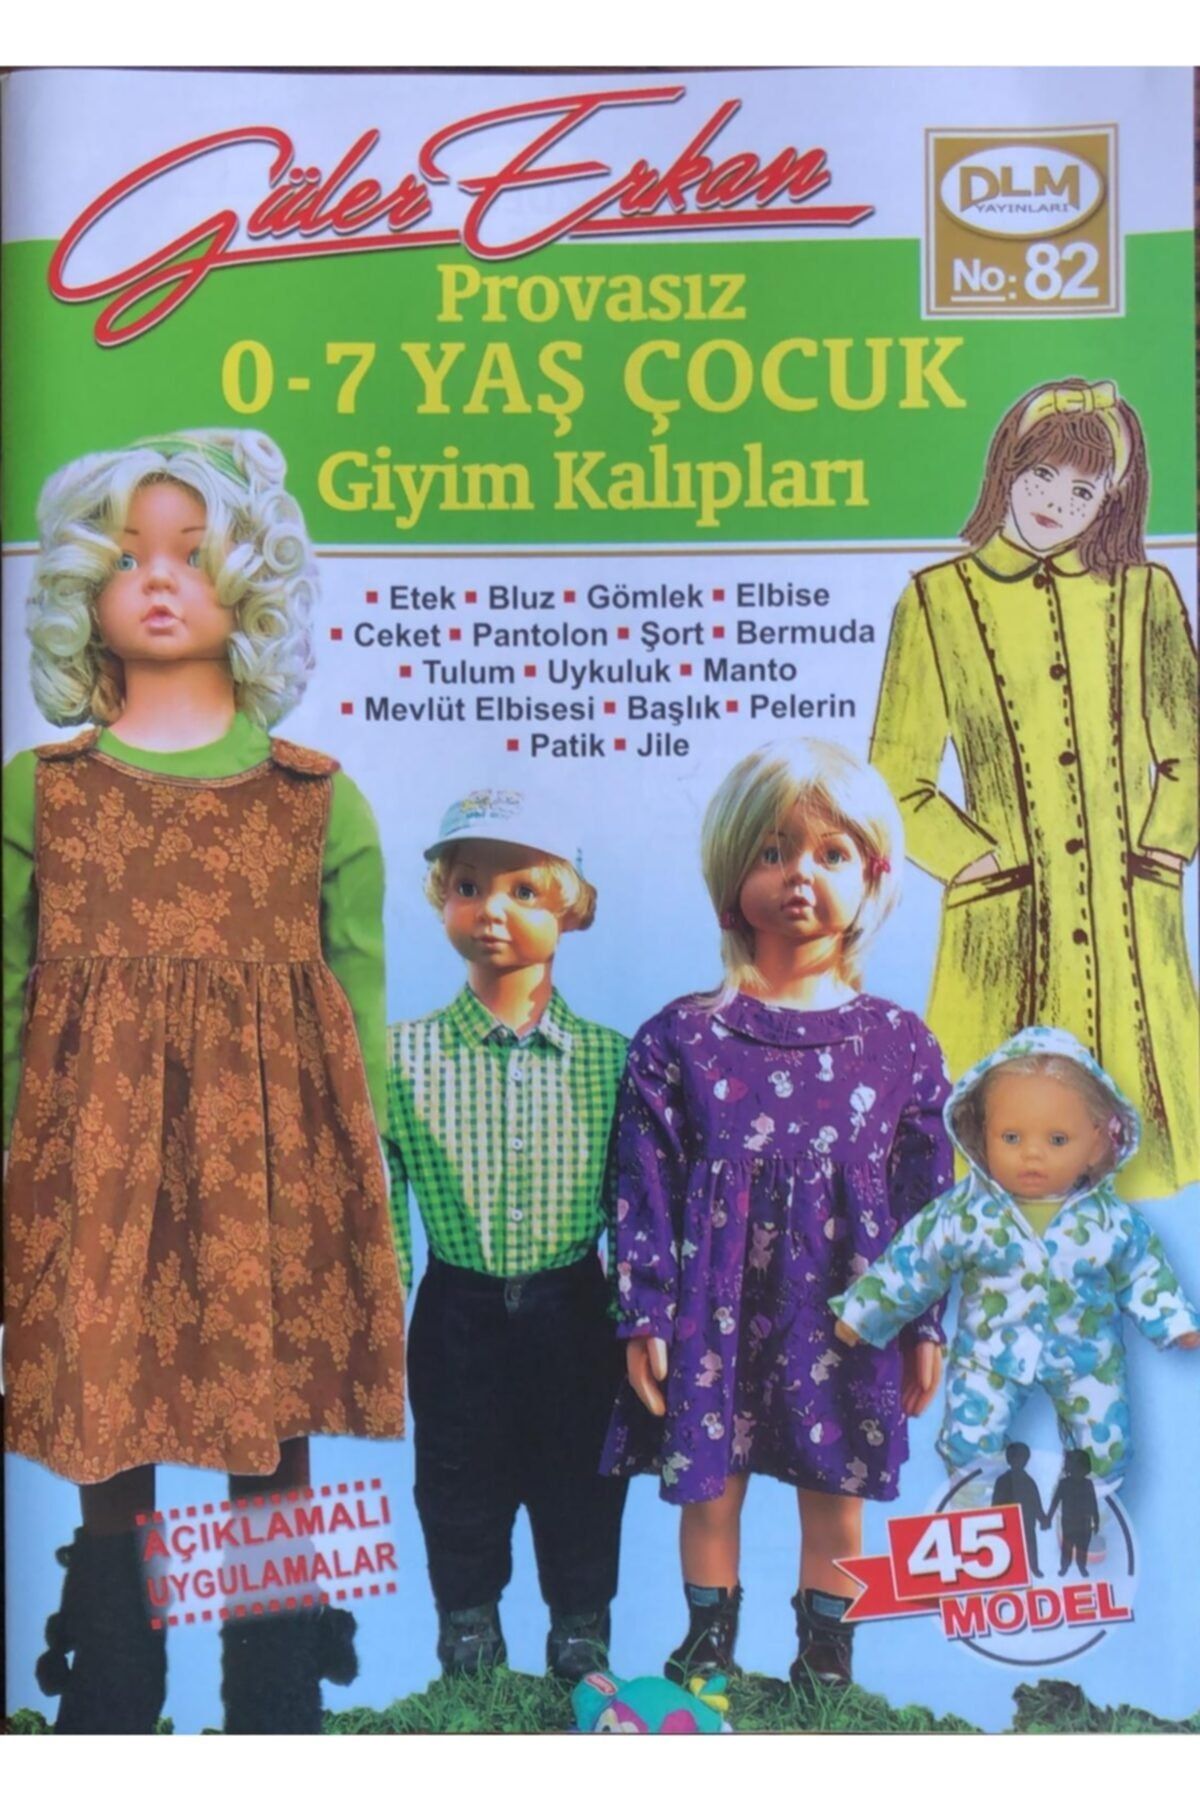 Dilem Yayınları Güler Erkan Provasız Çocuk Giyim Kalıpları (No 82) 0-7 Yaş No 82